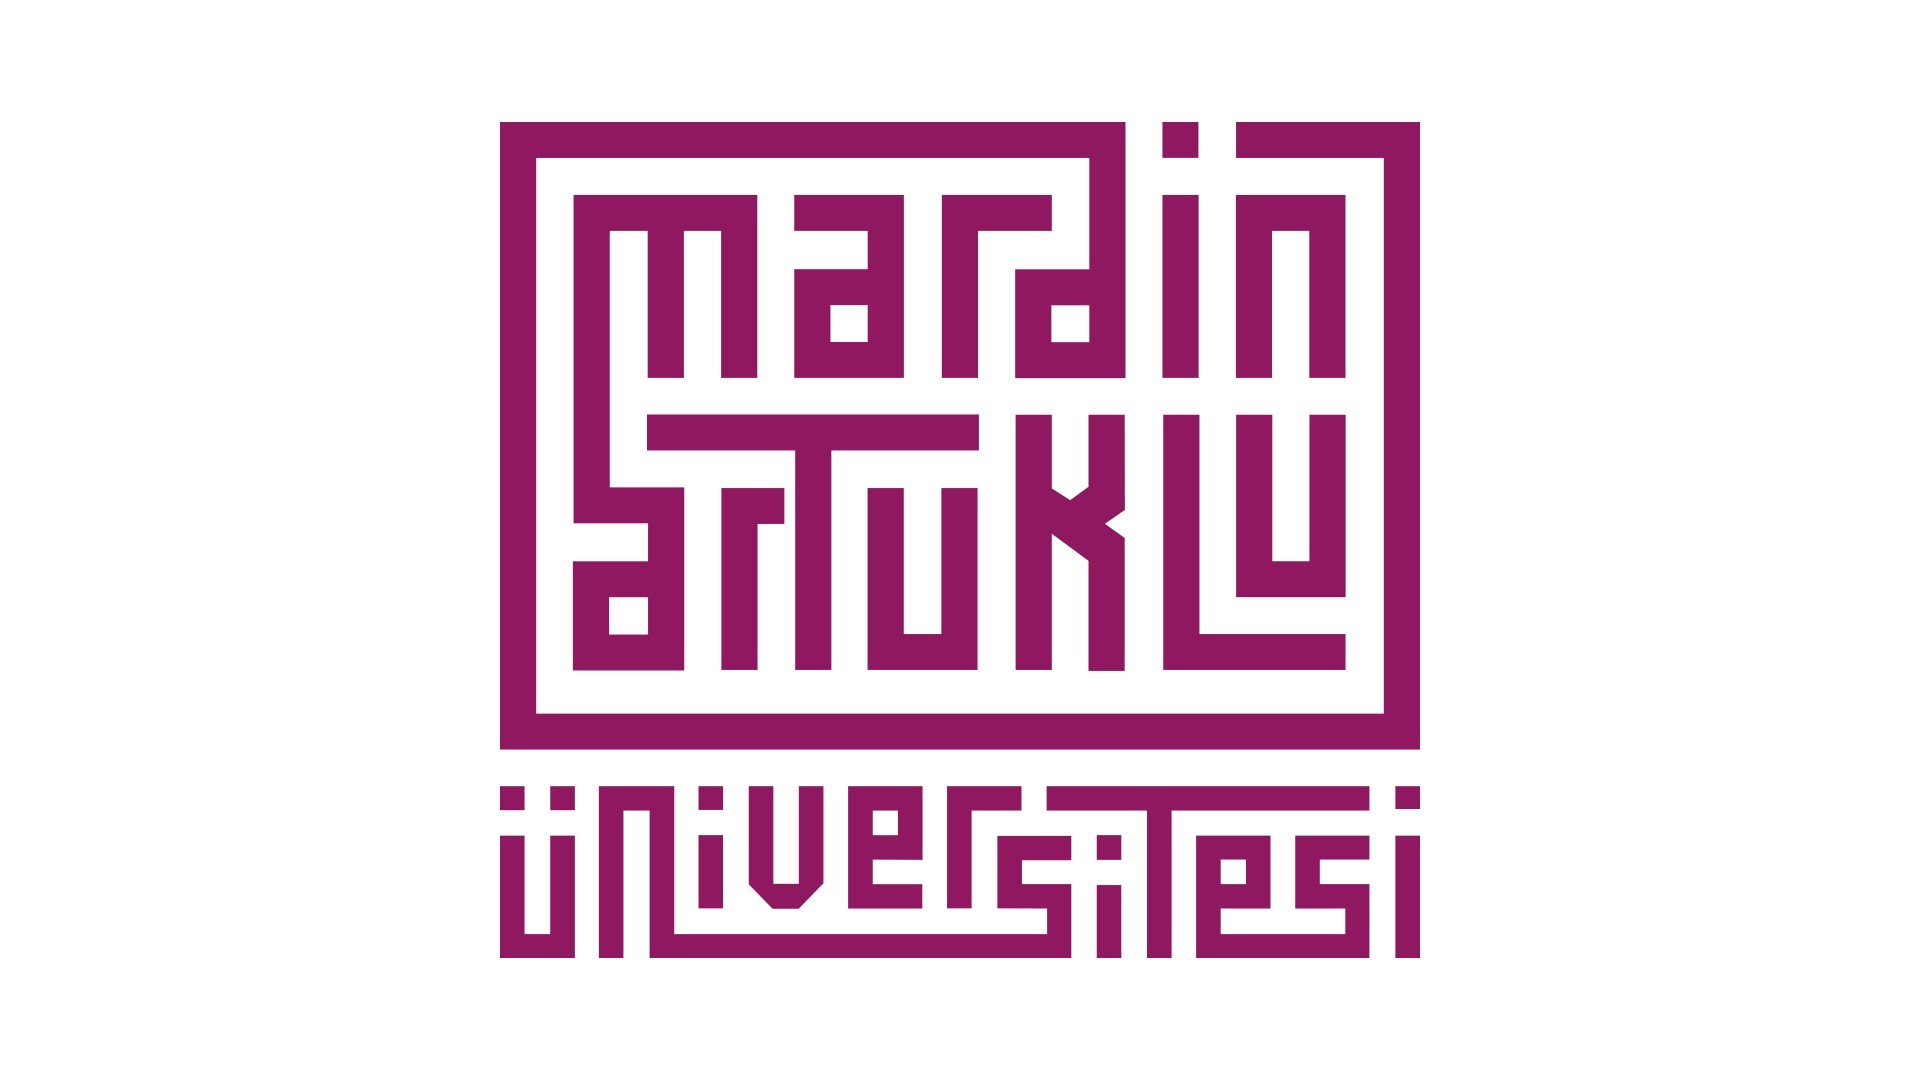 Mardin Artuklu Universität